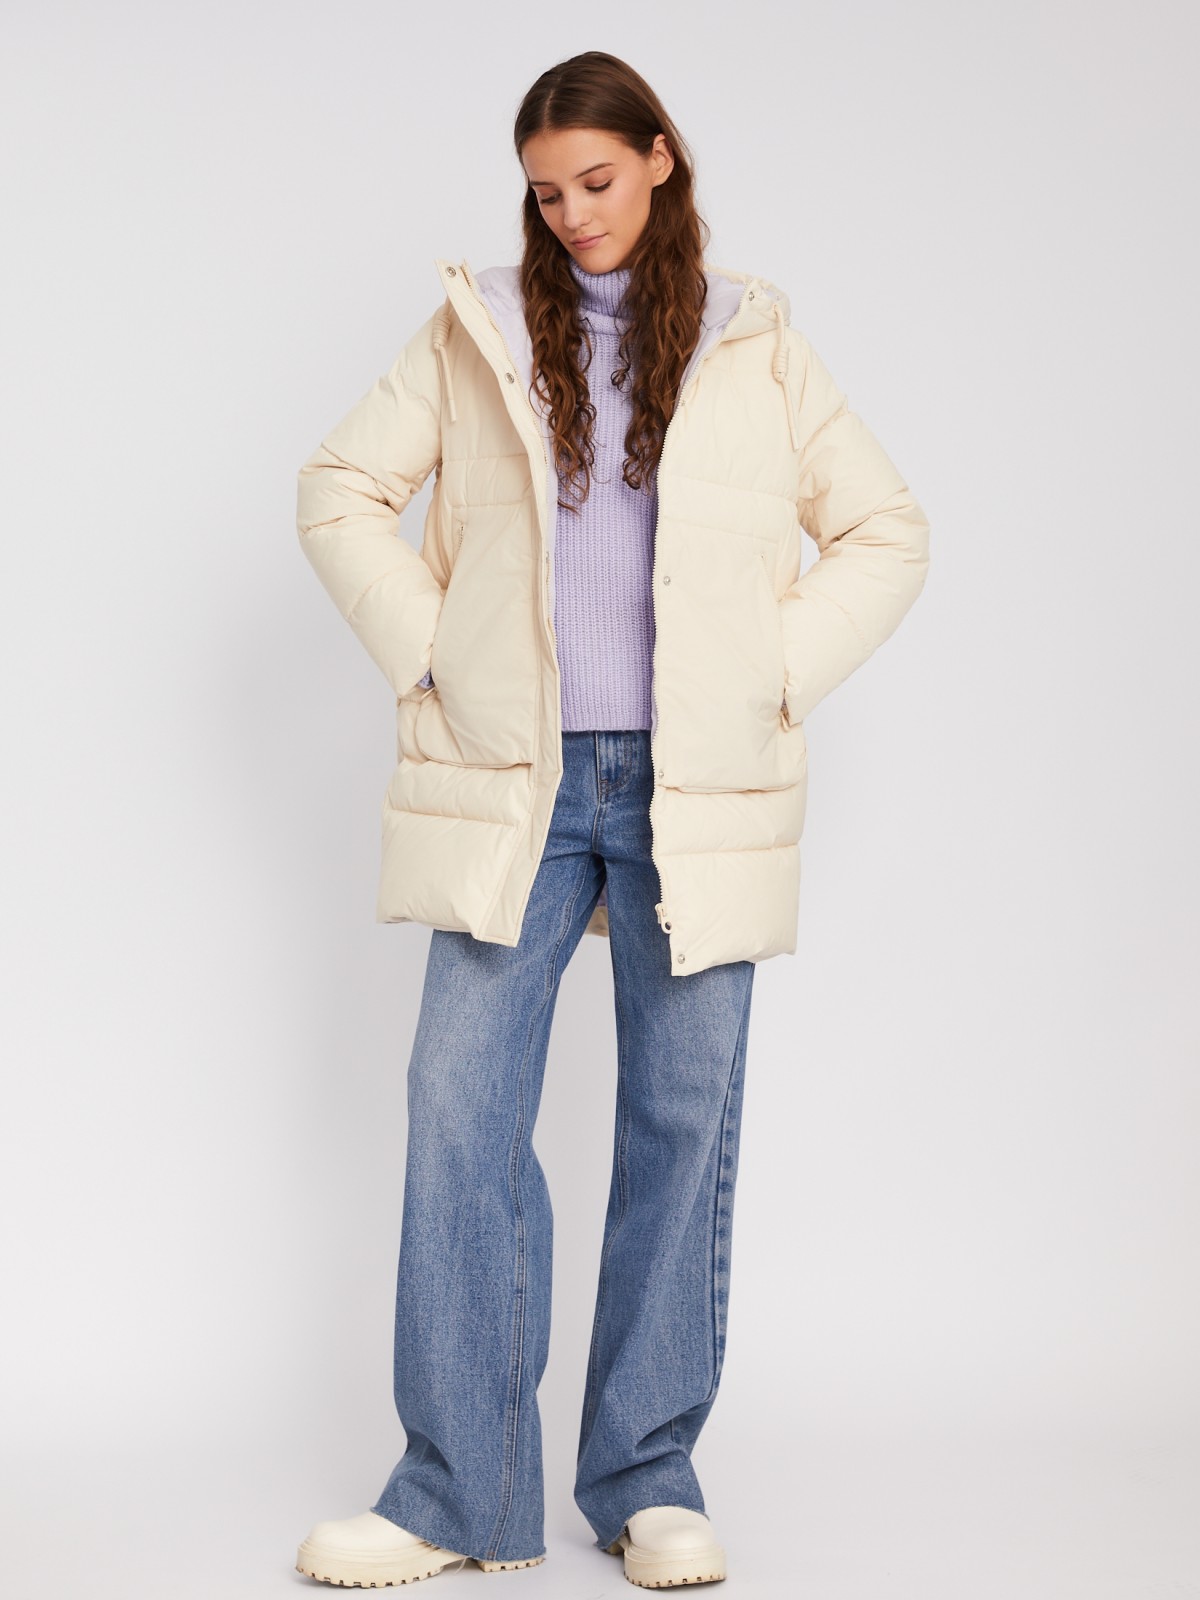 Тёплая стёганая куртка-пальто с капюшоном zolla 023345202114, цвет молоко, размер XS - фото 2